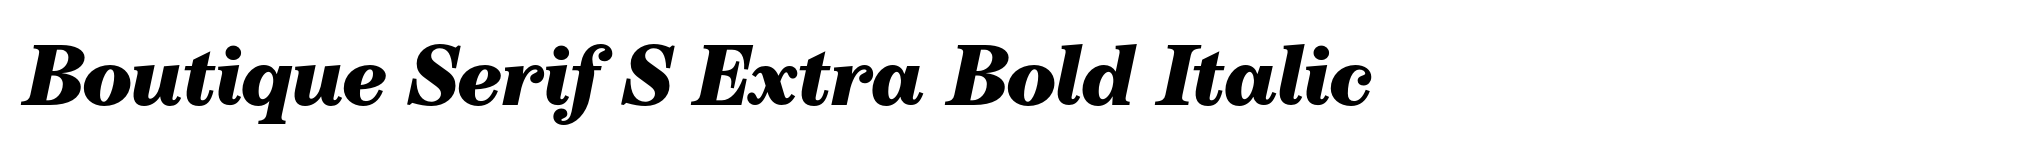 Boutique Serif S Extra Bold Italic image